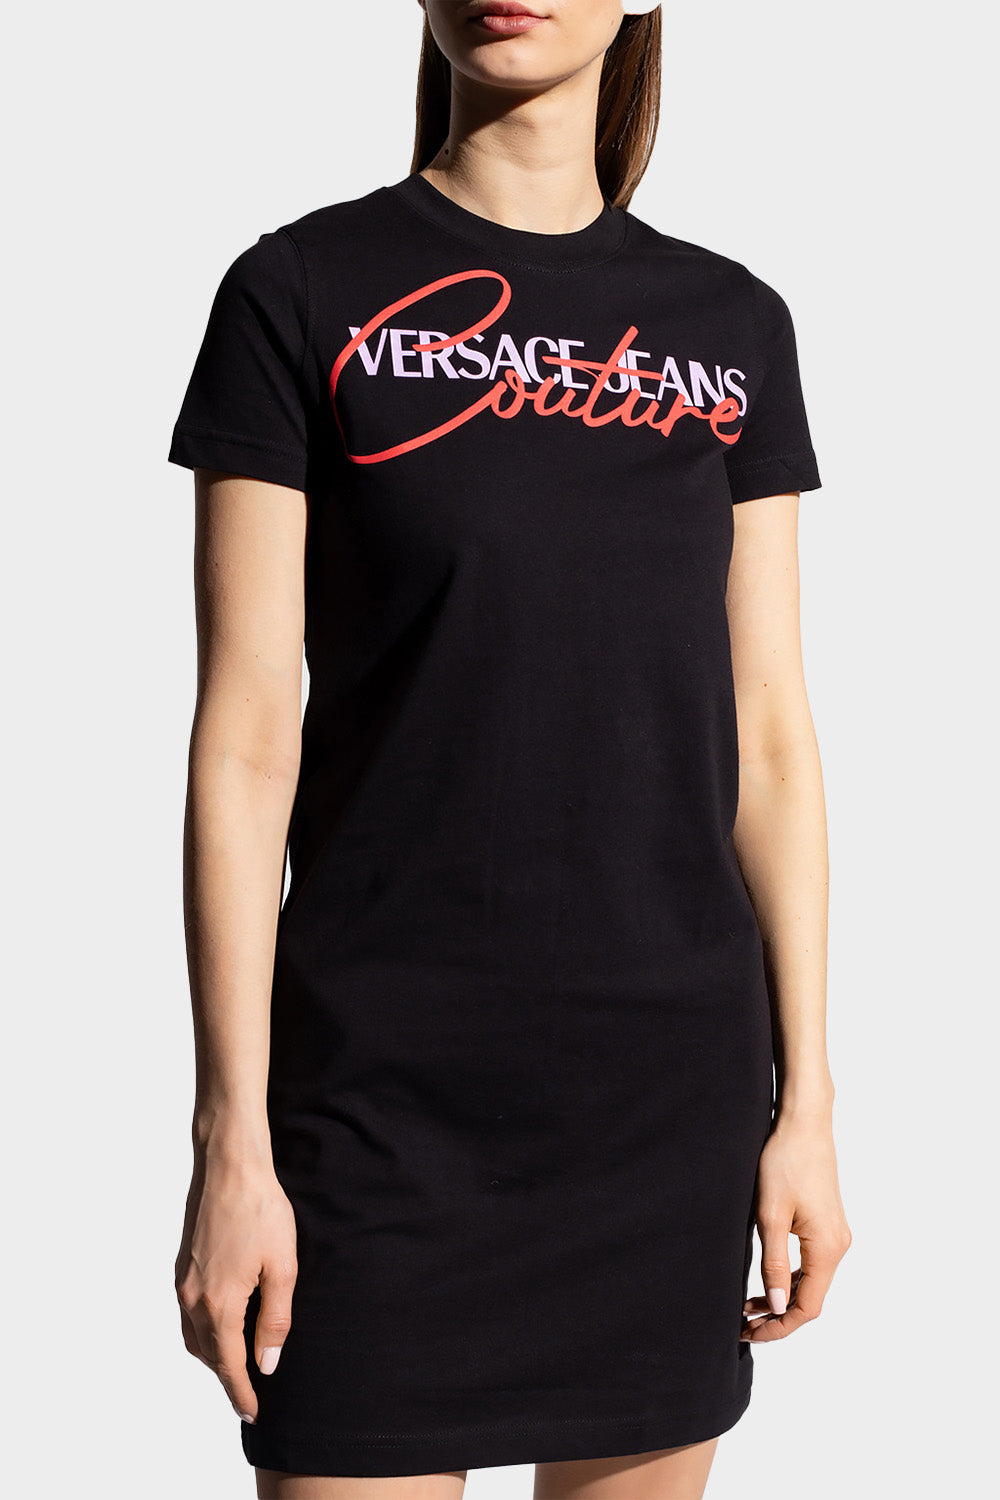 שמלת טי שירט לנשים לוגו VERSACE Vendome online | ונדום .